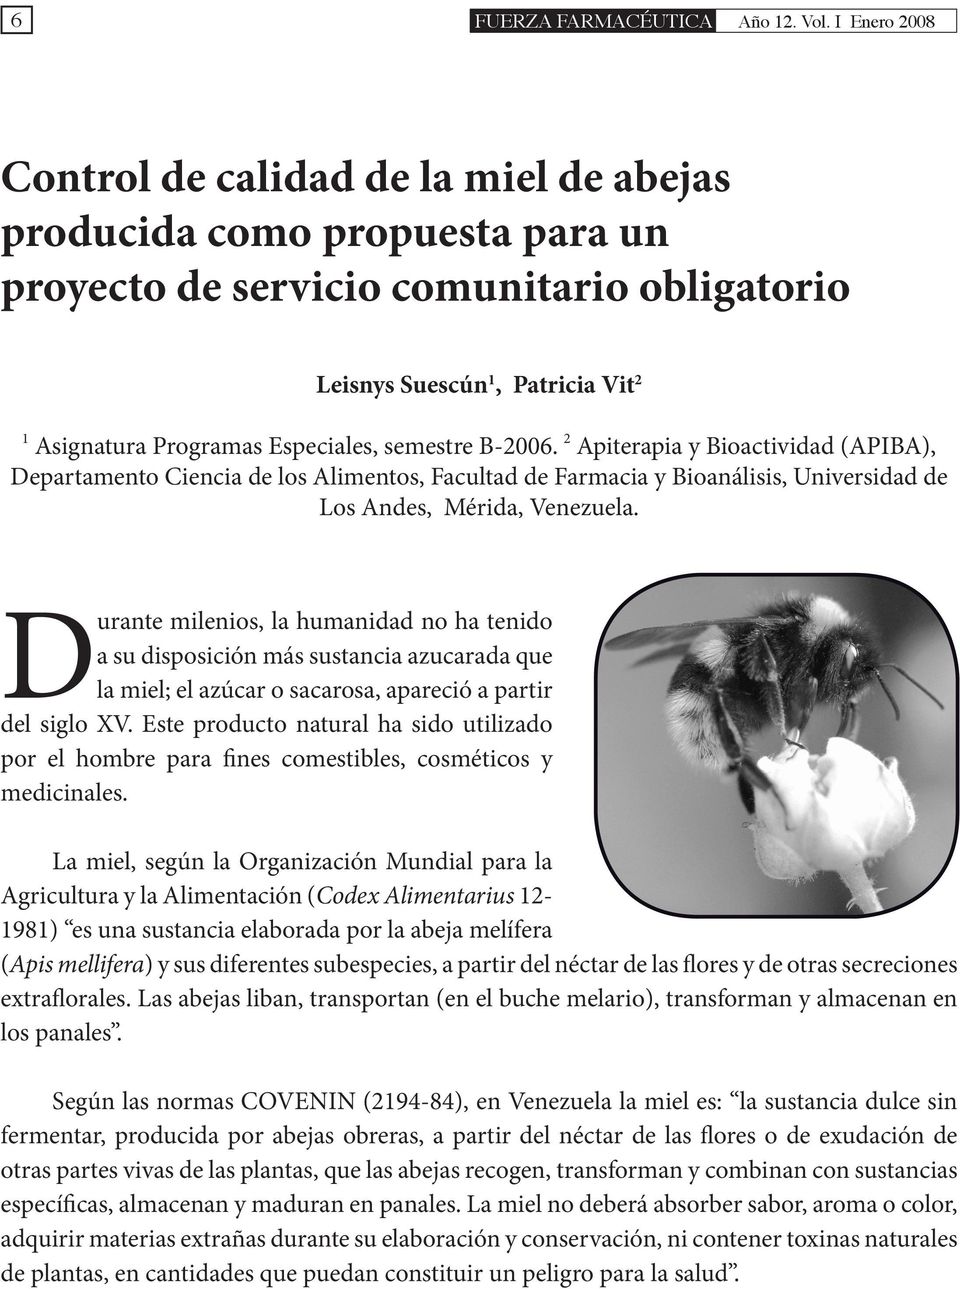 semestre B-2006. 2 Apiterapia y Bioactividad (APIBA), Departamento Ciencia de los Alimentos, Facultad de Farmacia y Bioanálisis, Universidad de Los Andes, Mérida, Venezuela.